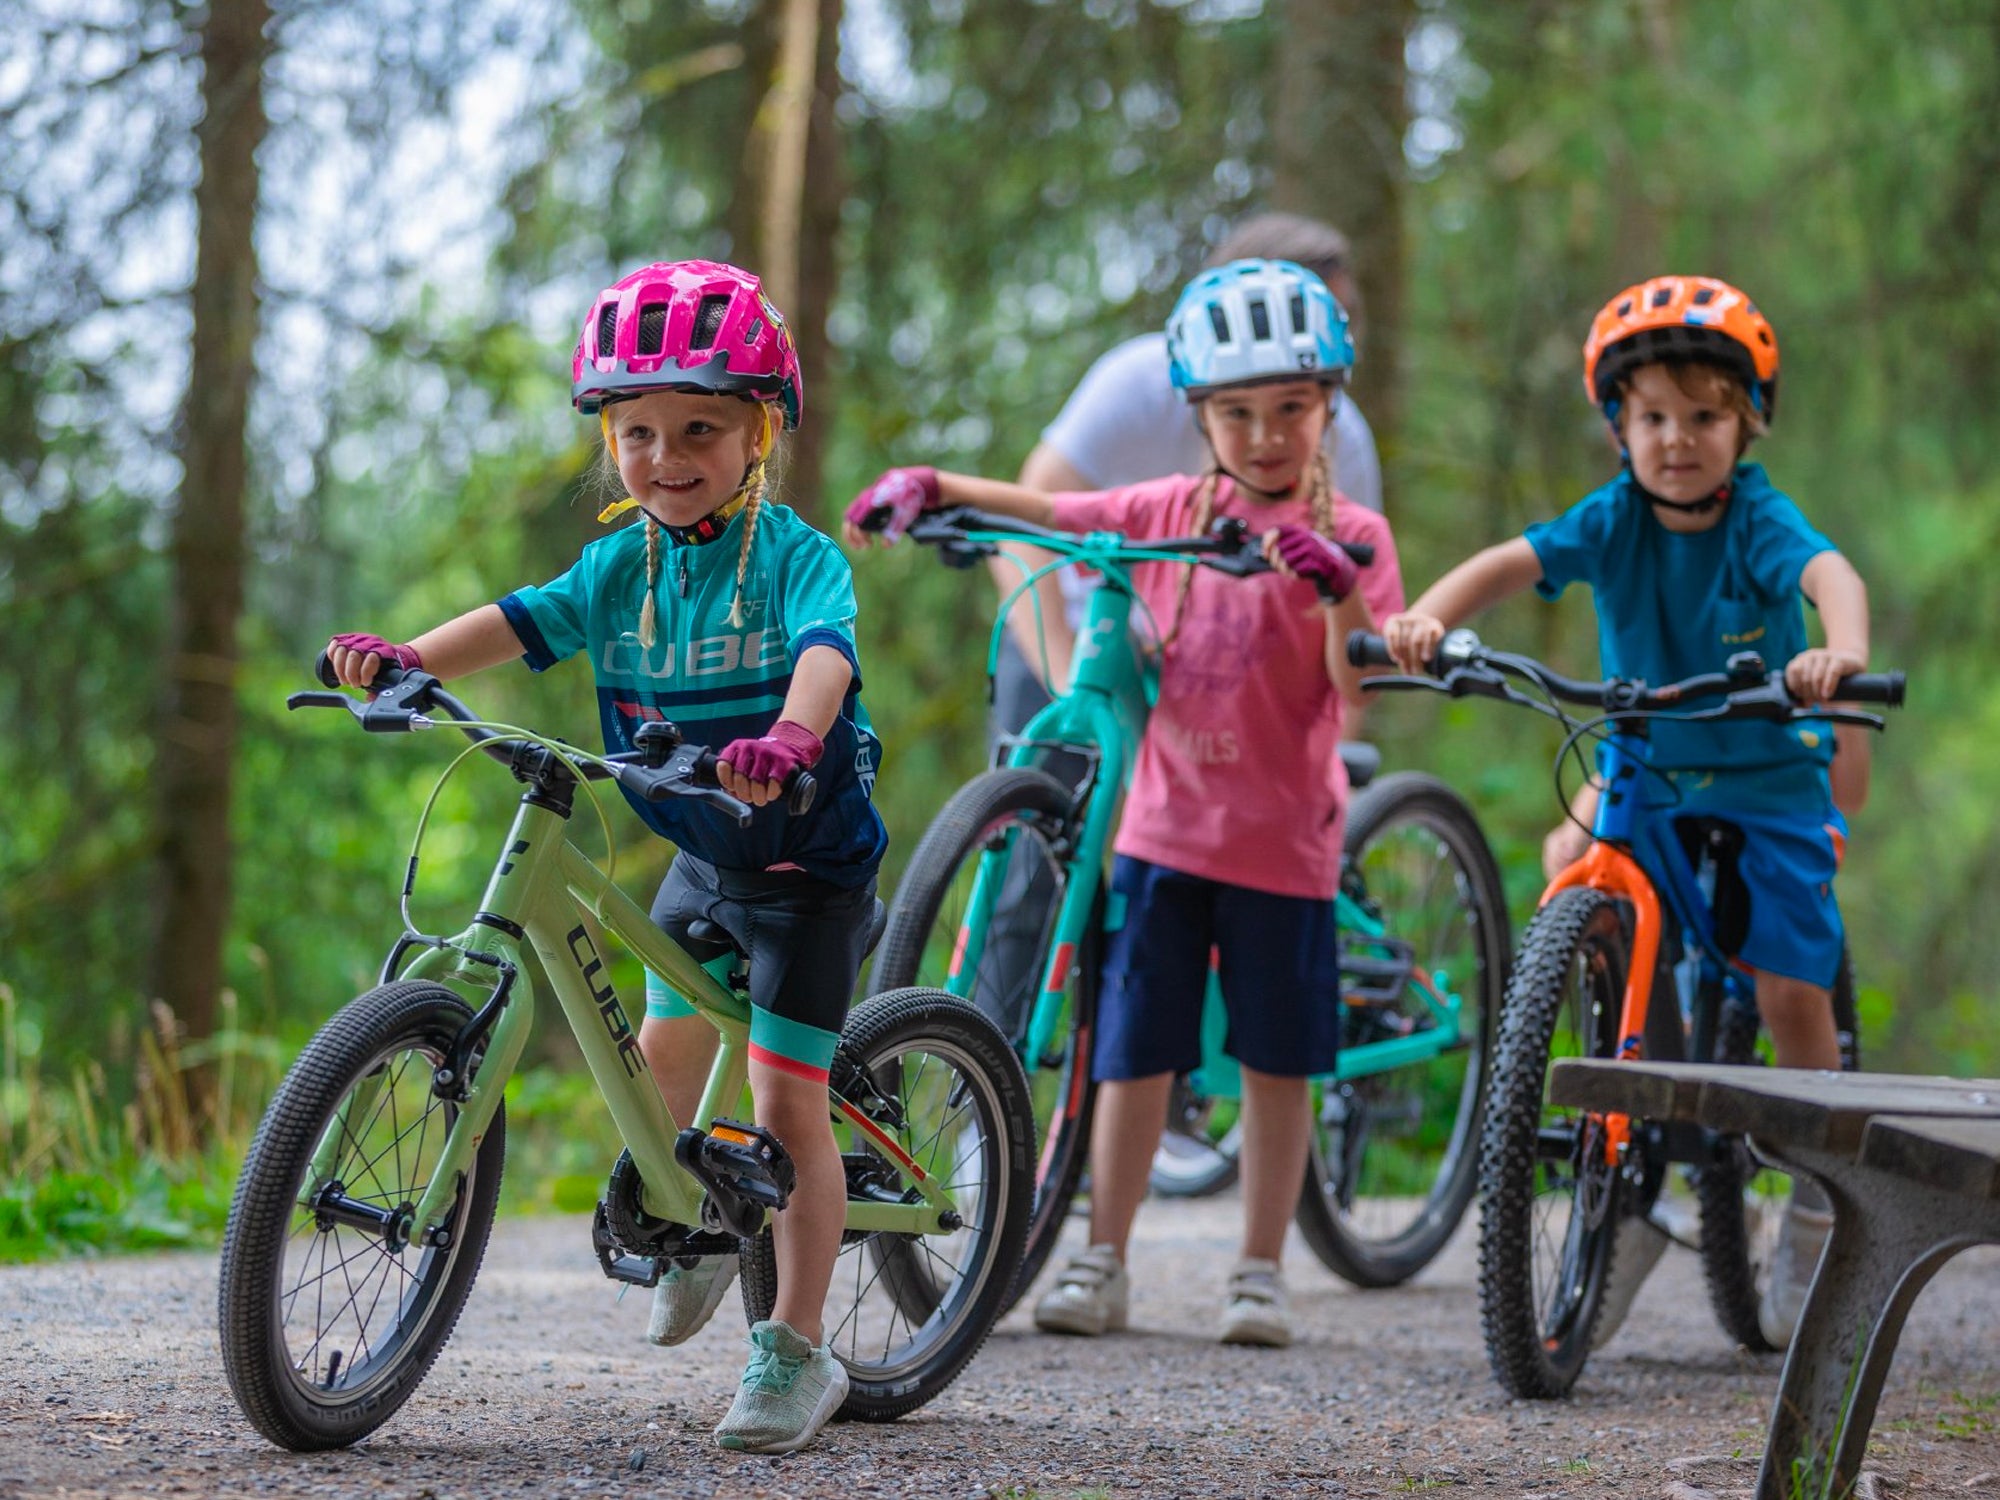 Drei junge Kinder in sportlicher Kleidung und Fahrradhelmen stehen mit ihren Cube Kinderfahrrädern auf einem Pfad in einem Wald.